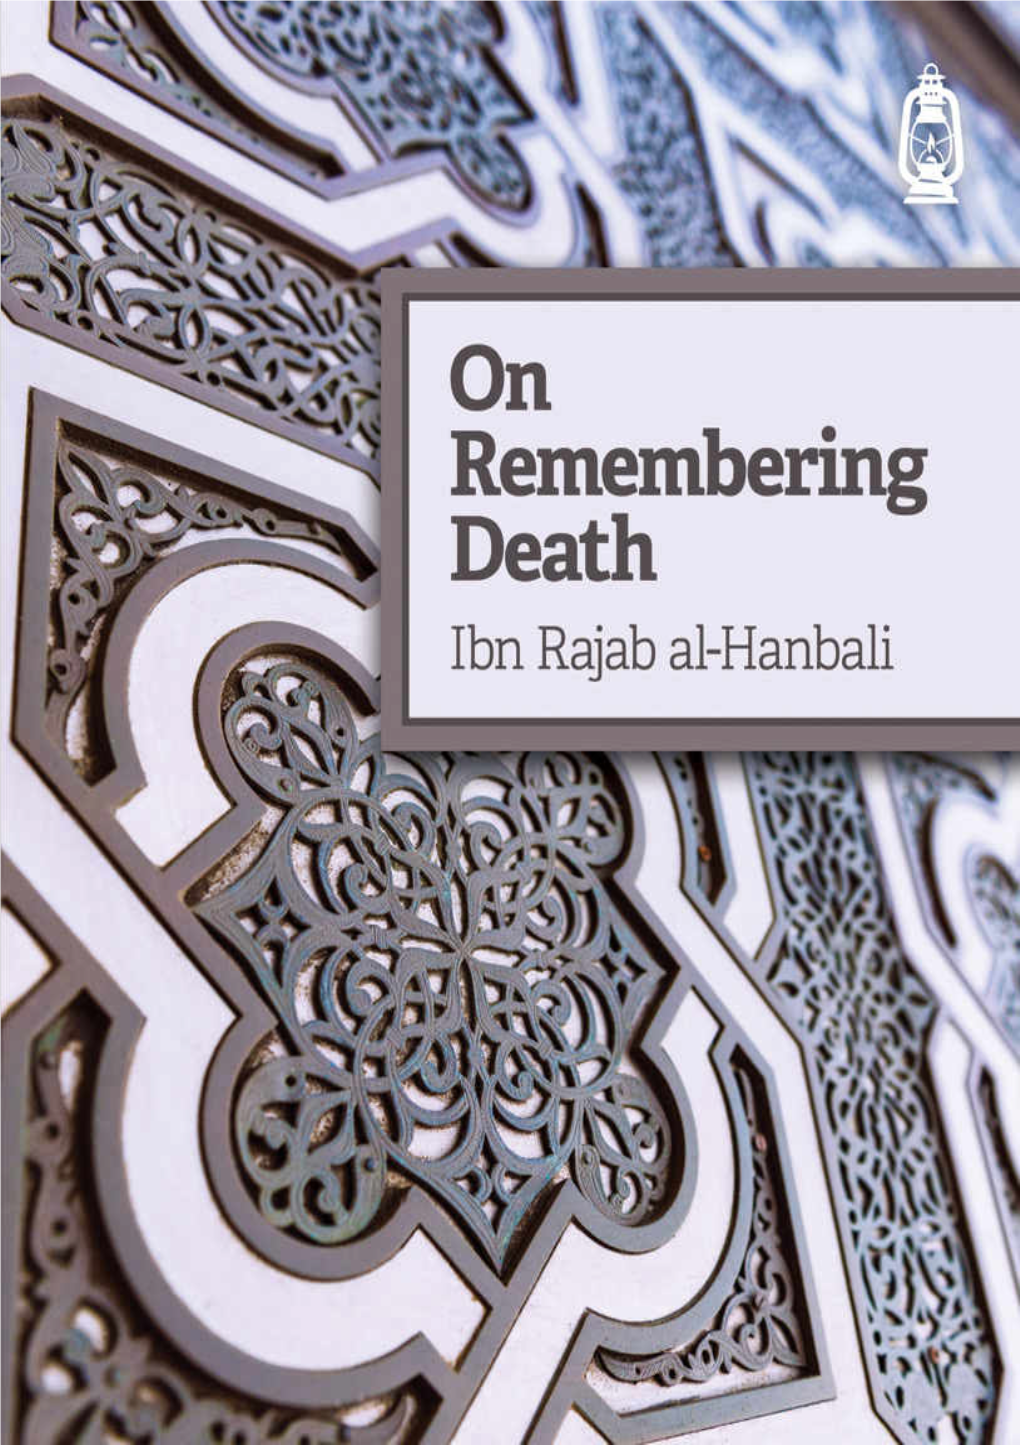 On Remembering Death Written by Ibn Rajab Al-Hanbali